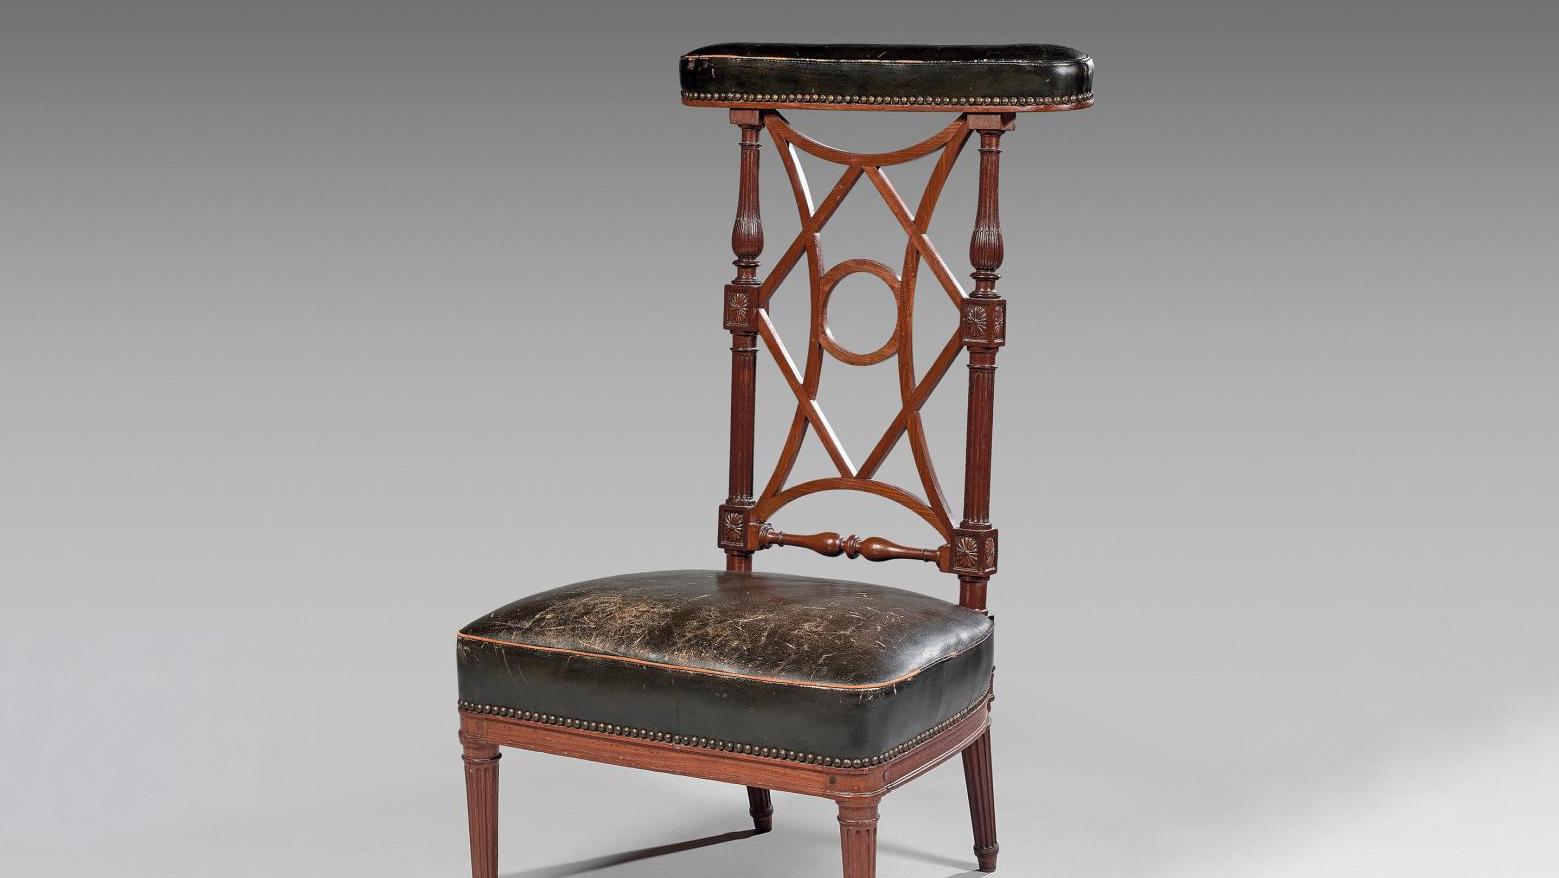 18 415 € Époque Louis XVI, chaise ponteuse en acajou de Cuba, porte une estampille... Voyeuse la ponteuse ?